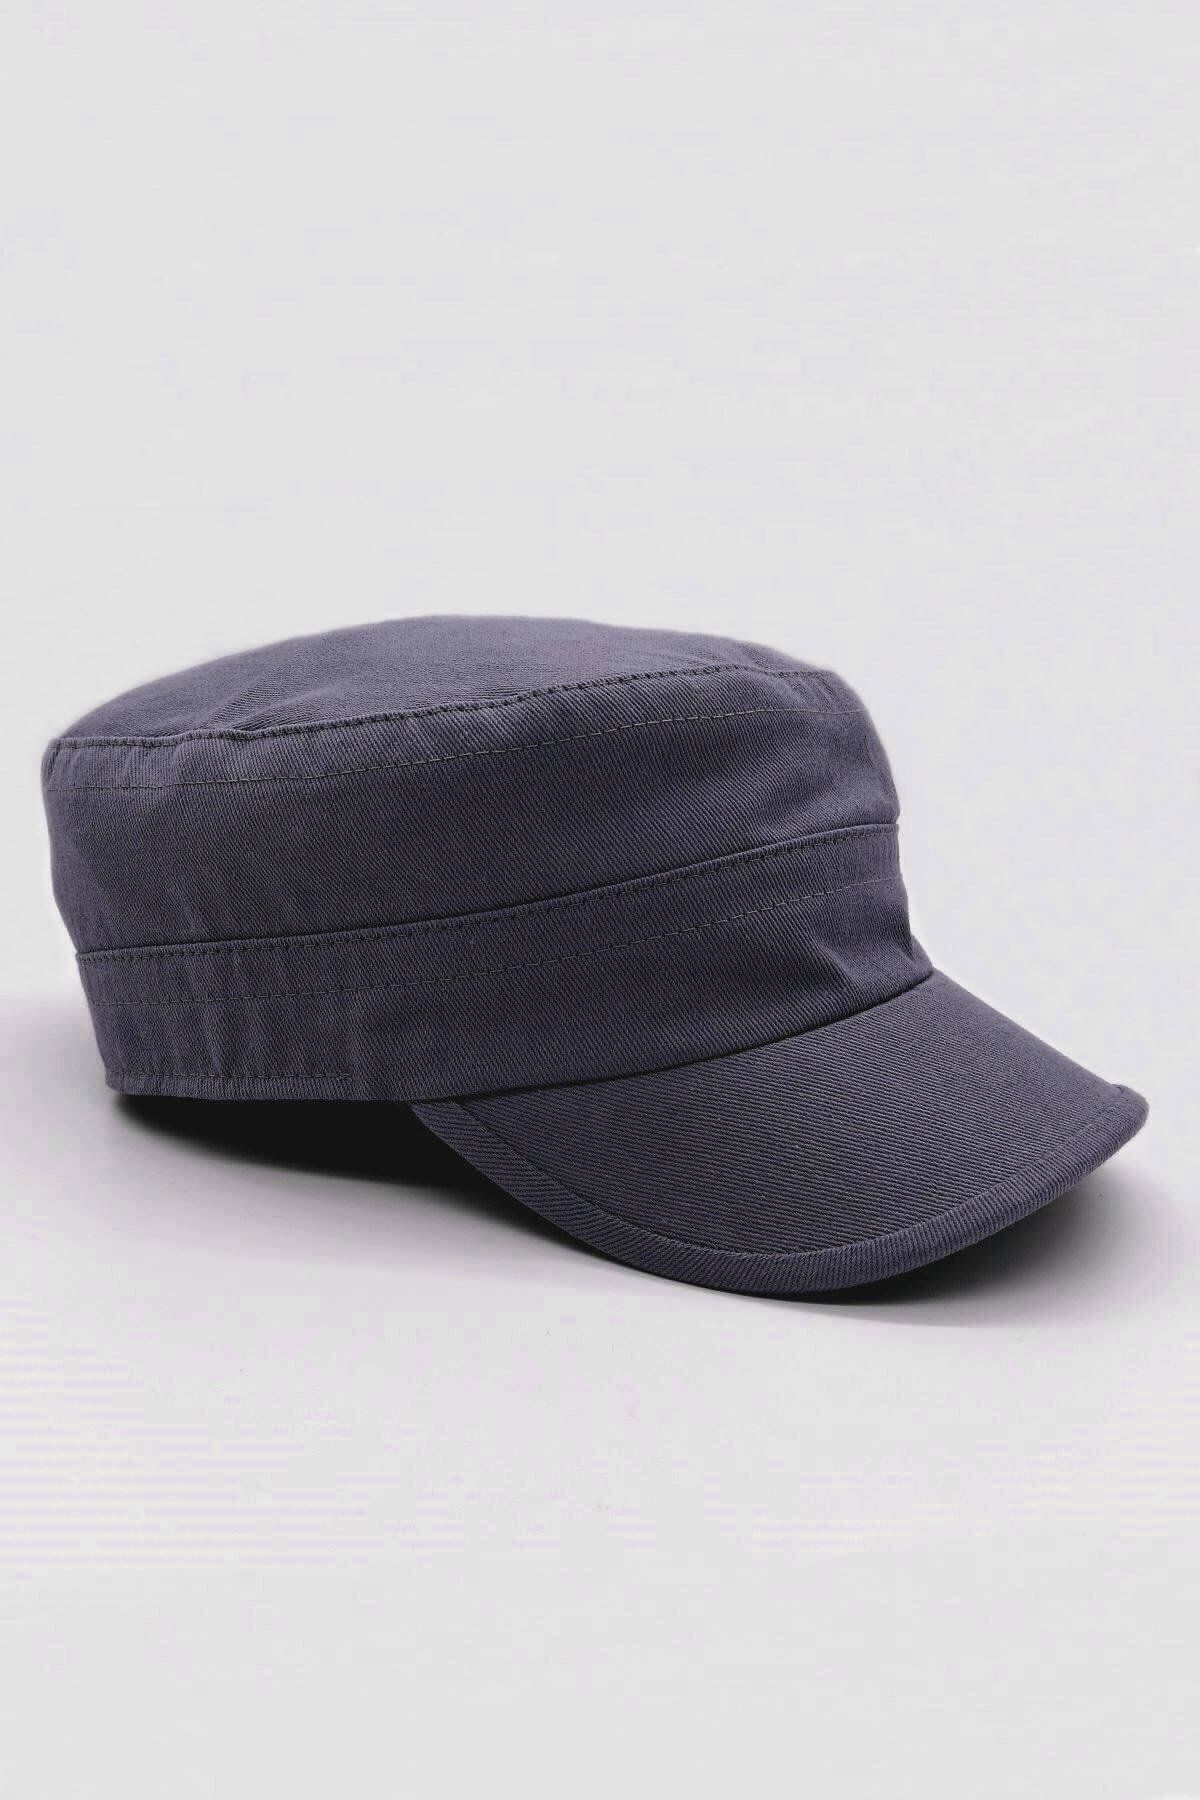 Külah Kastro Model Pamuk Yazlık Erkek Şapka - Lacivert